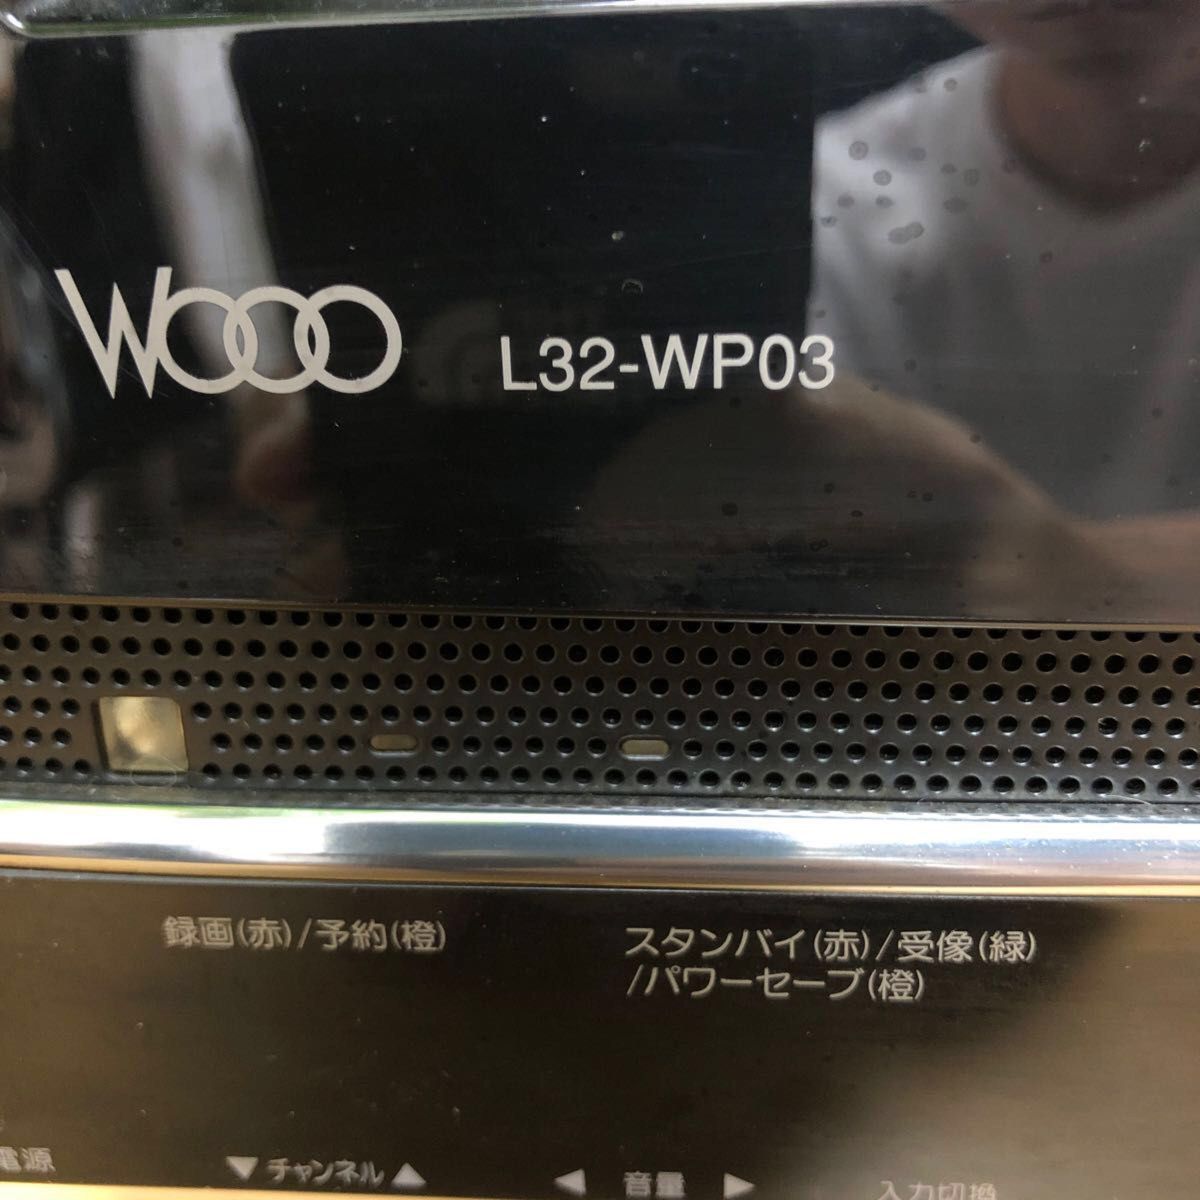 日立WOOO L32-WP03 録画付き液晶32型テレビ(送料込み)